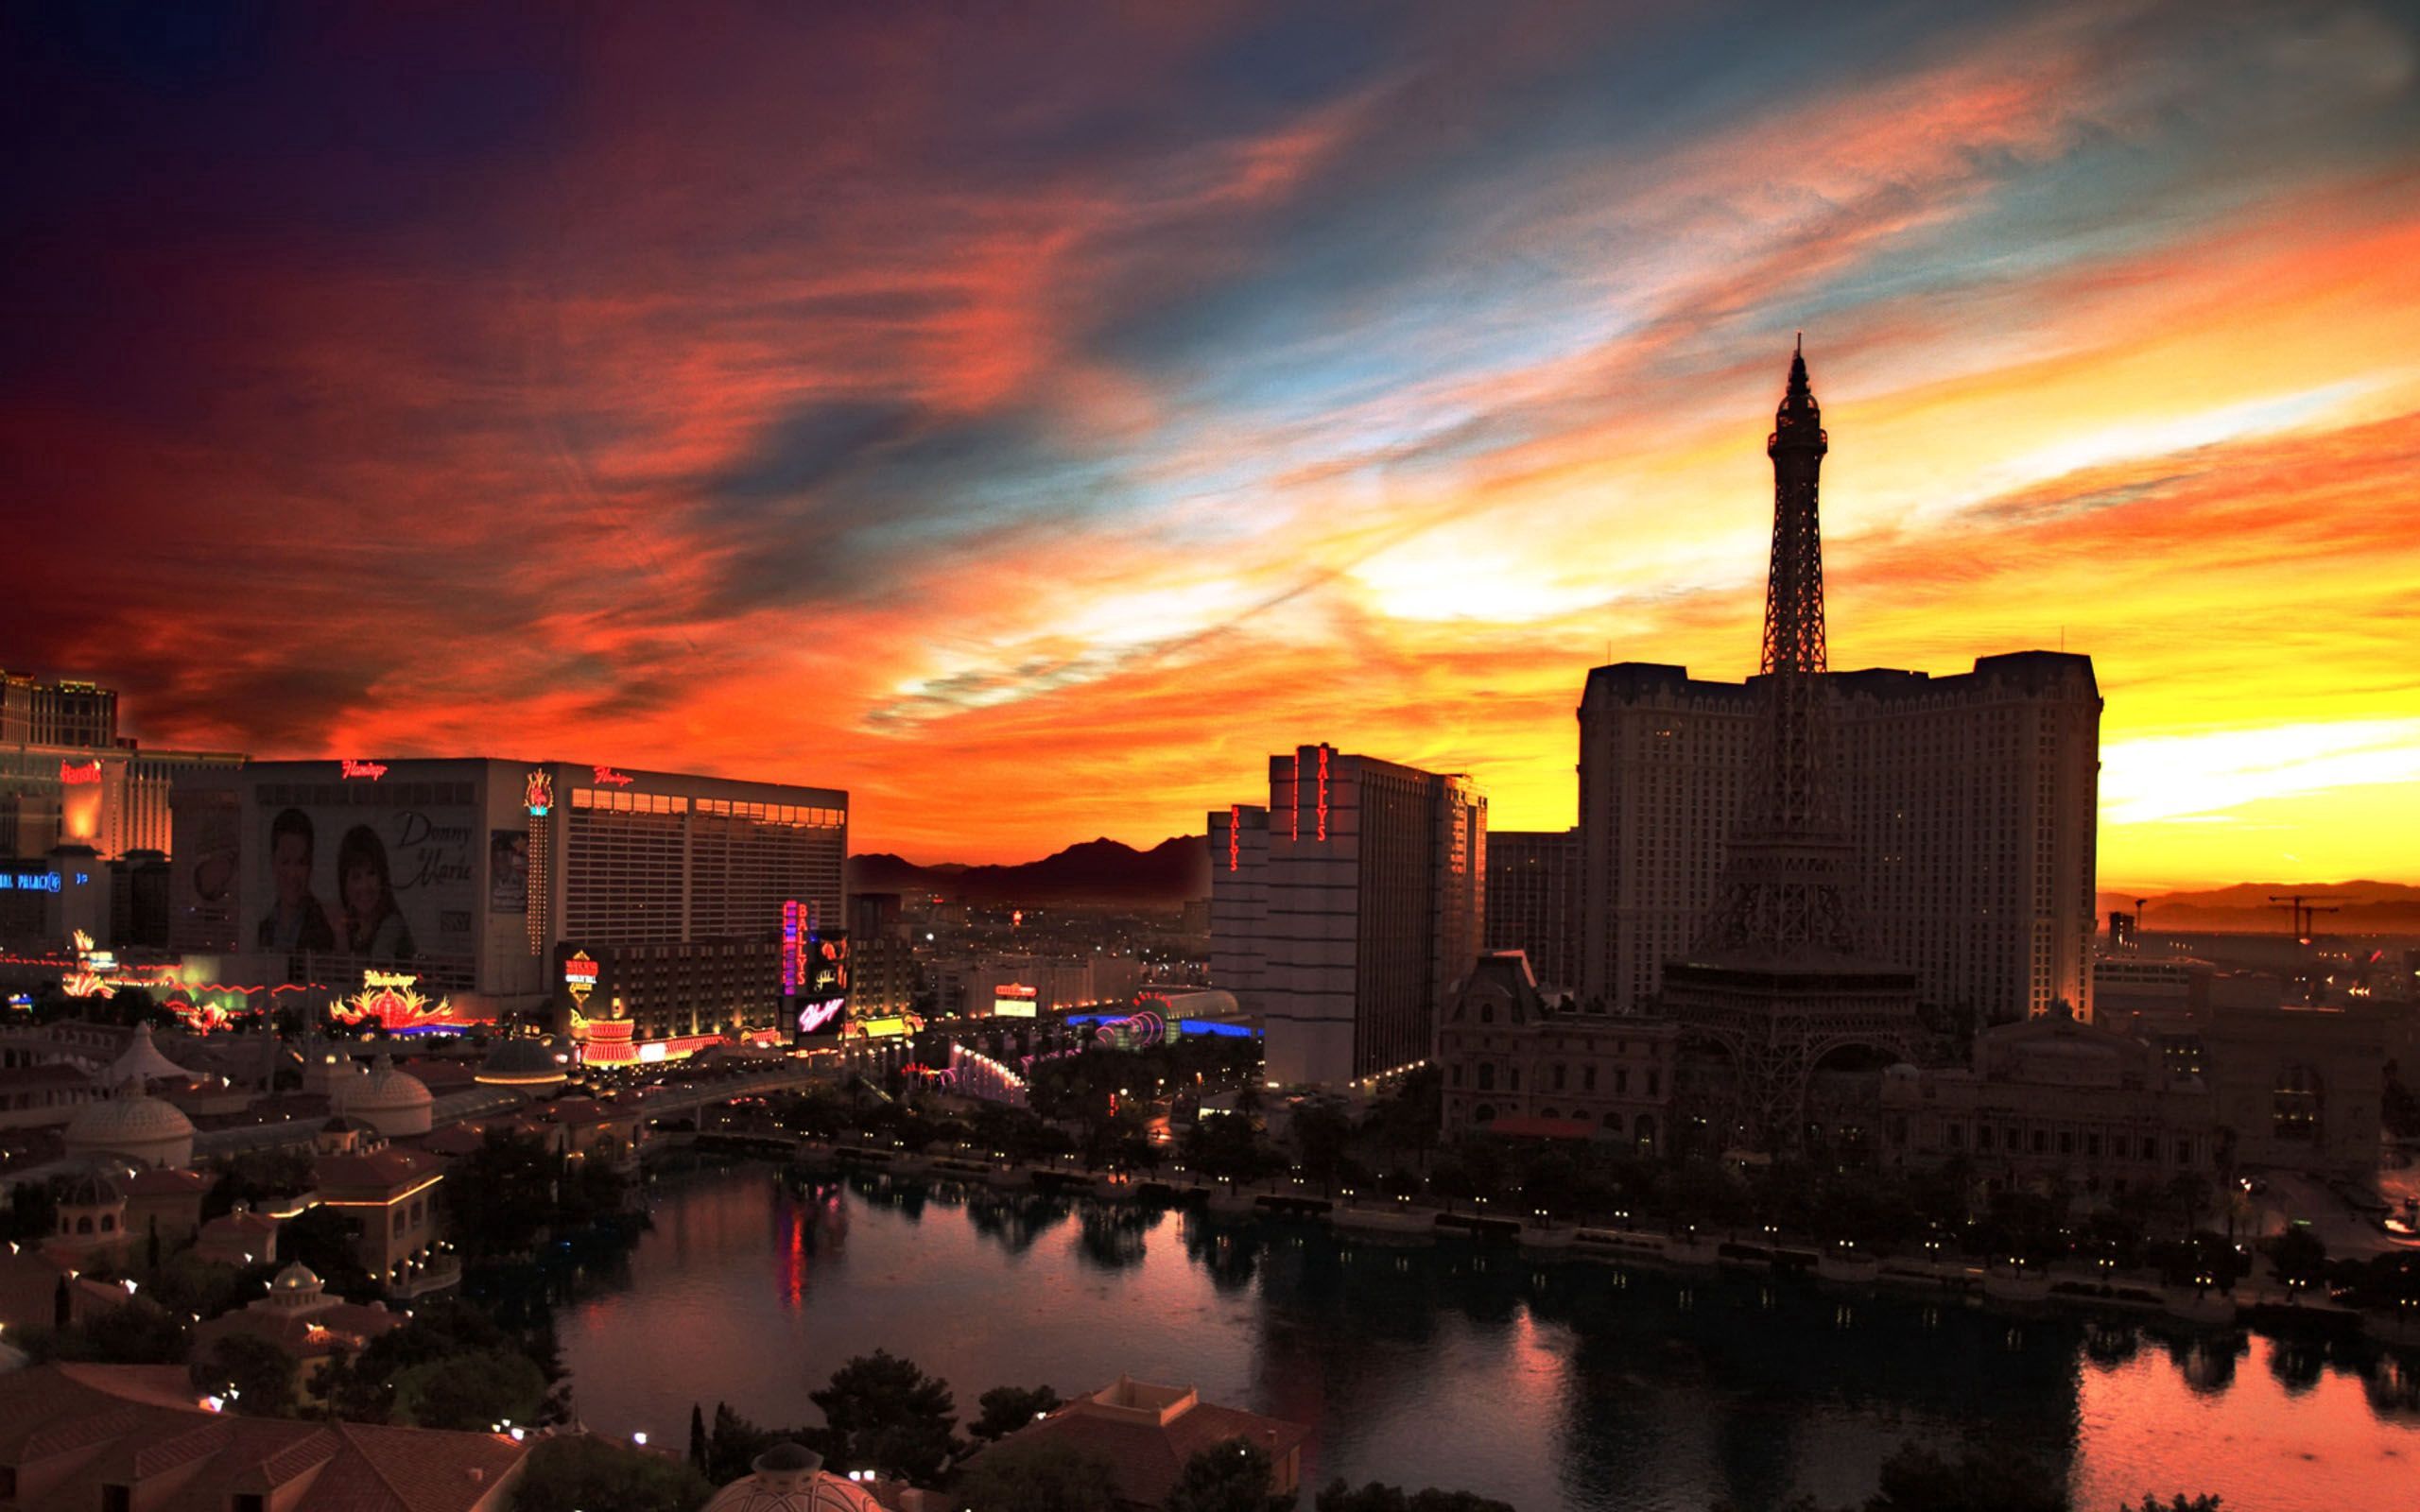 Популярные заставки и фоны Лас Вегас (Las Vegas) на компьютер